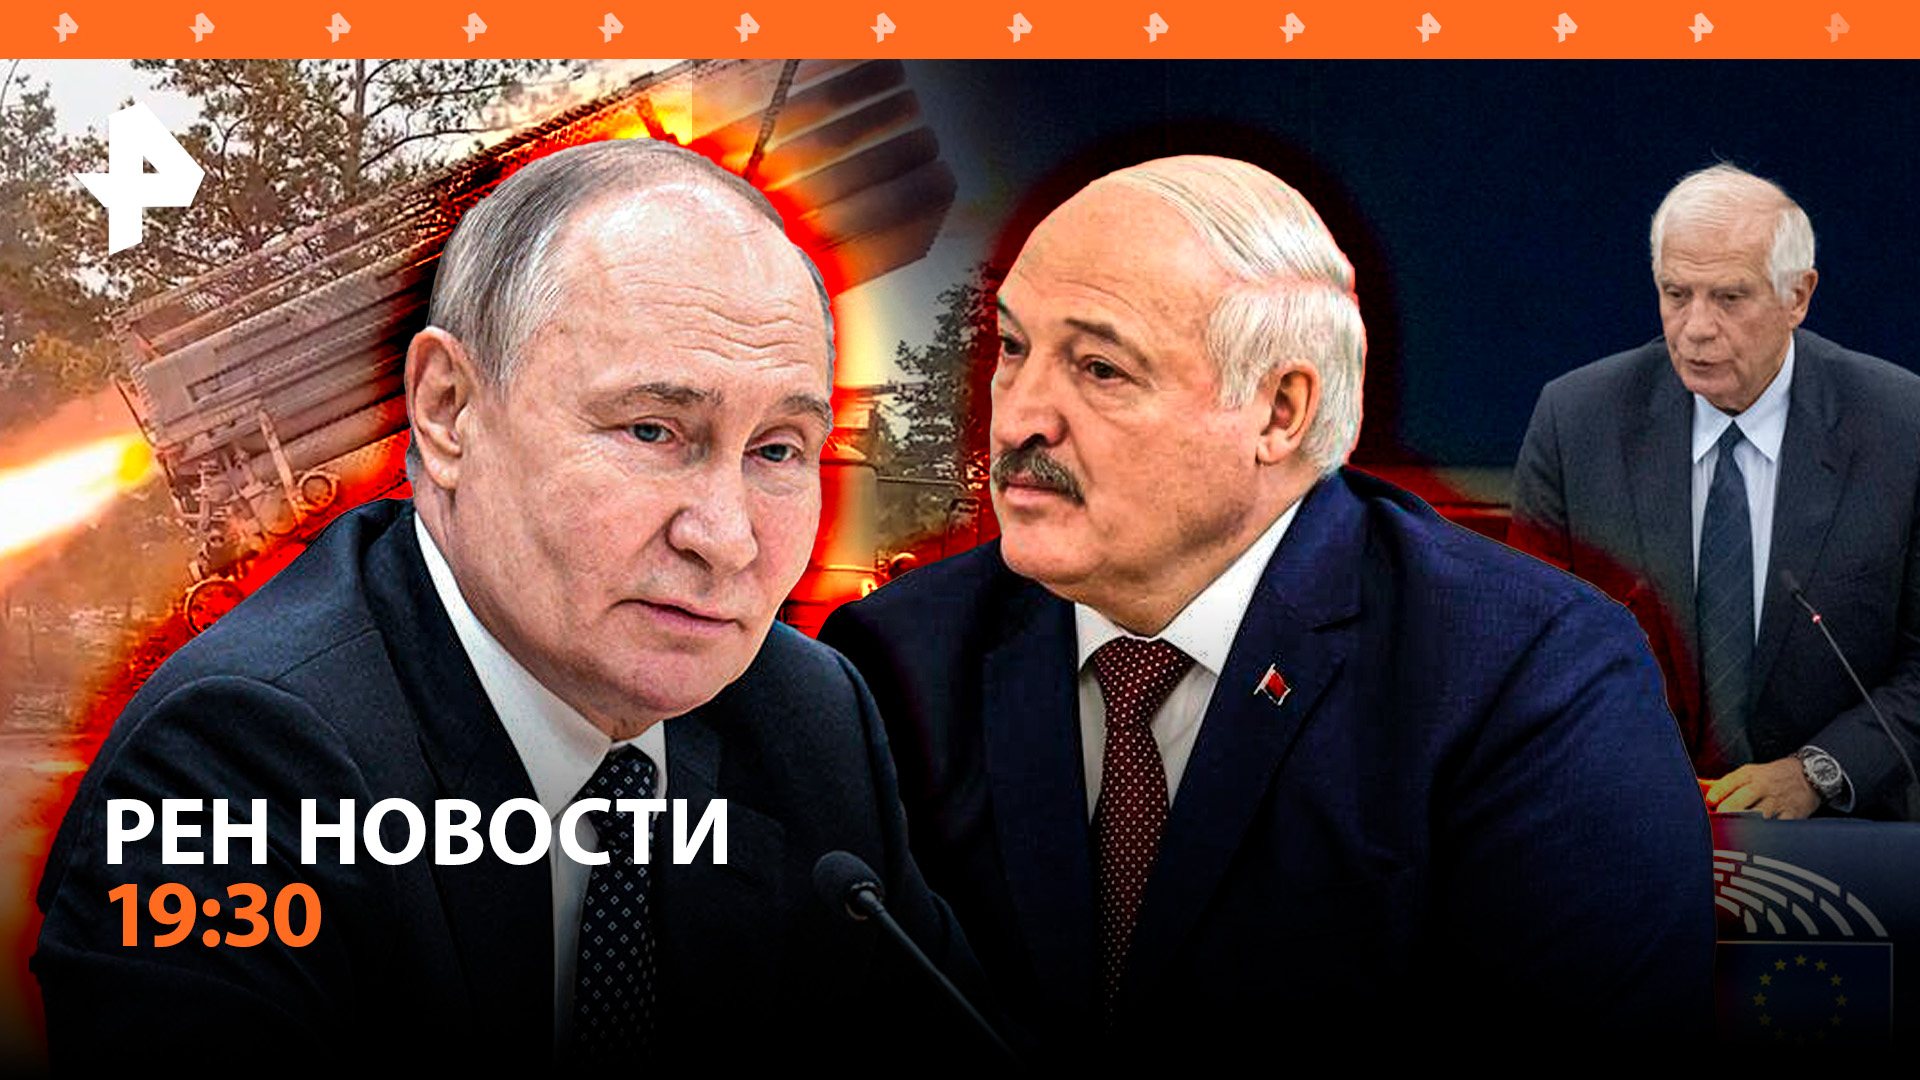 Атака дронов на съемках РЕН ТВ / Путин: на Украине пока не с кем договариваться / Рыба дорожает